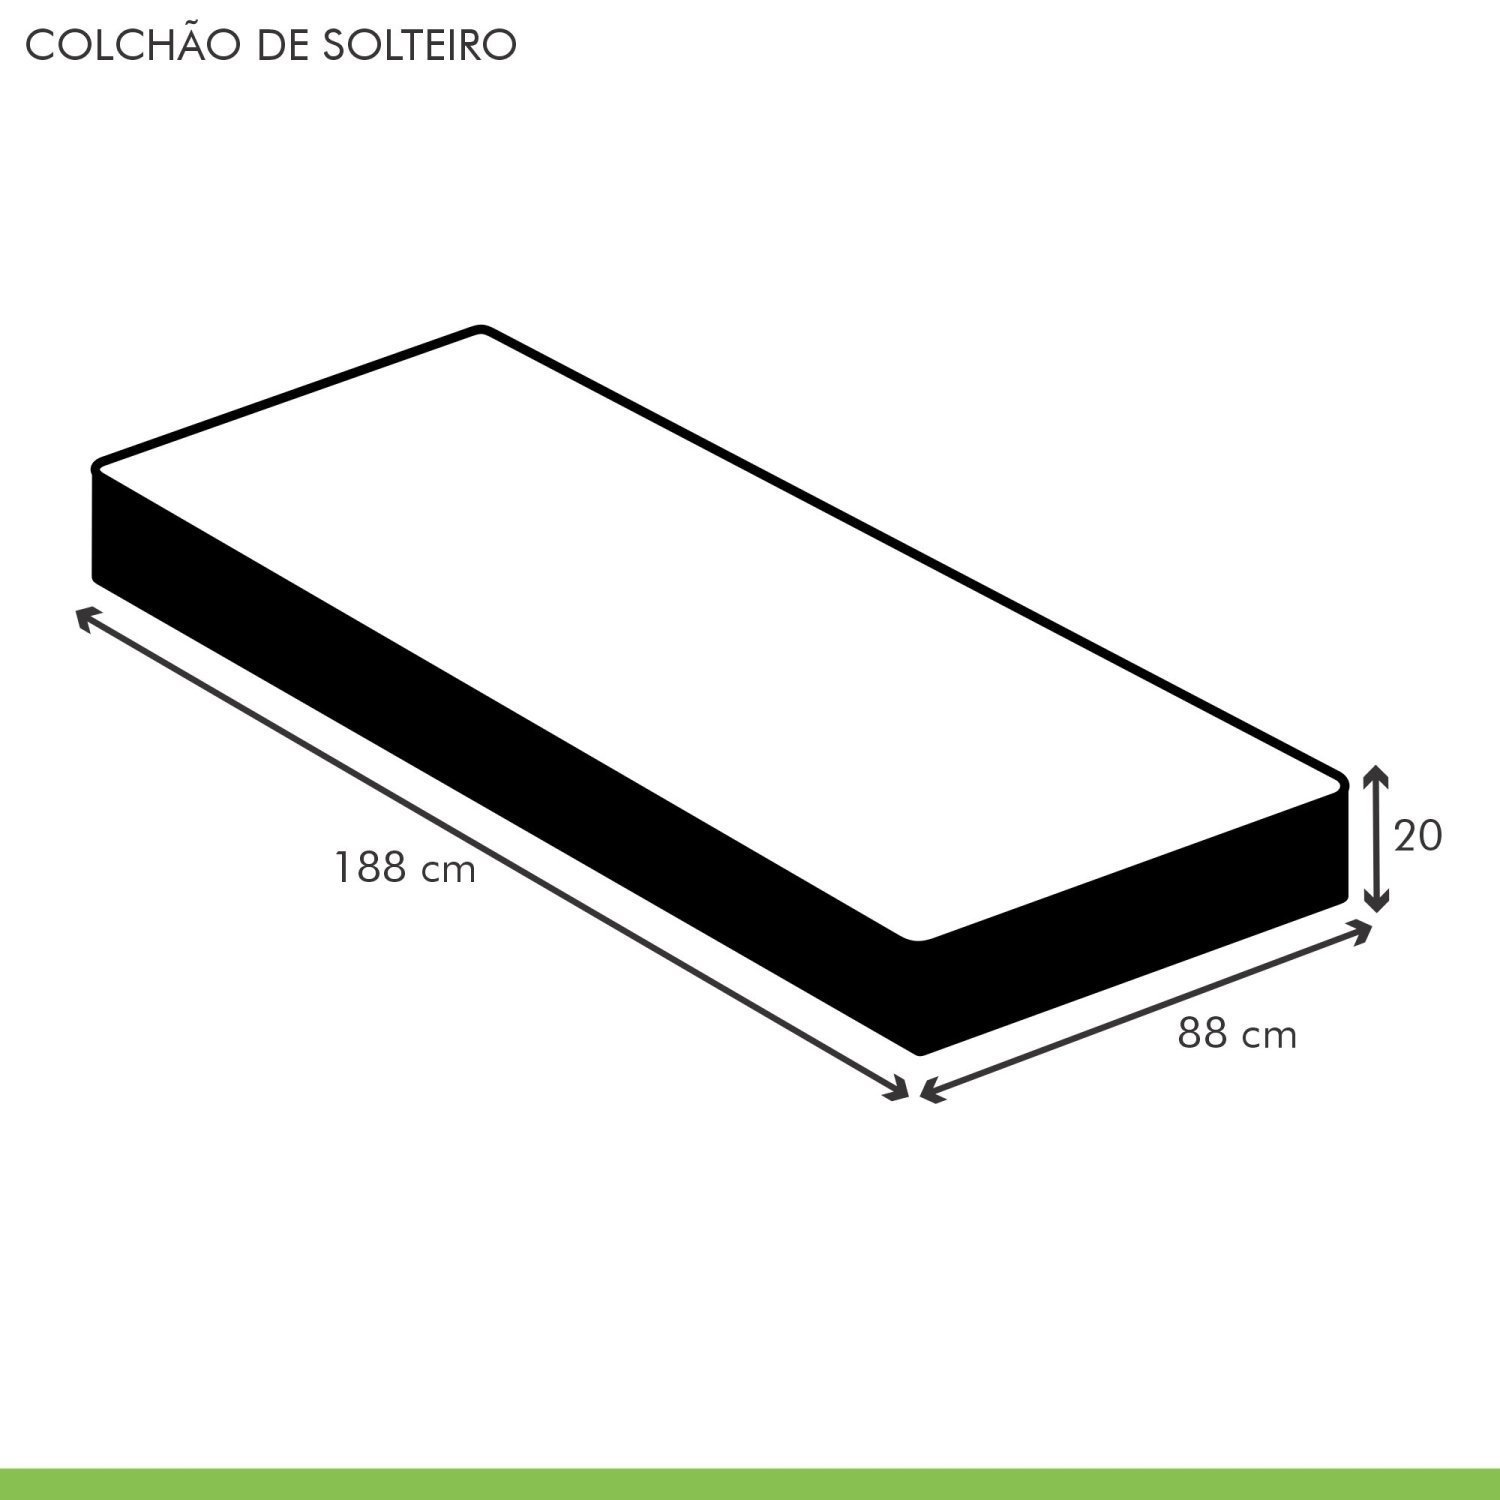 Colchão Solteiro  Unique D45 Duoface 20x88x188cm - 5